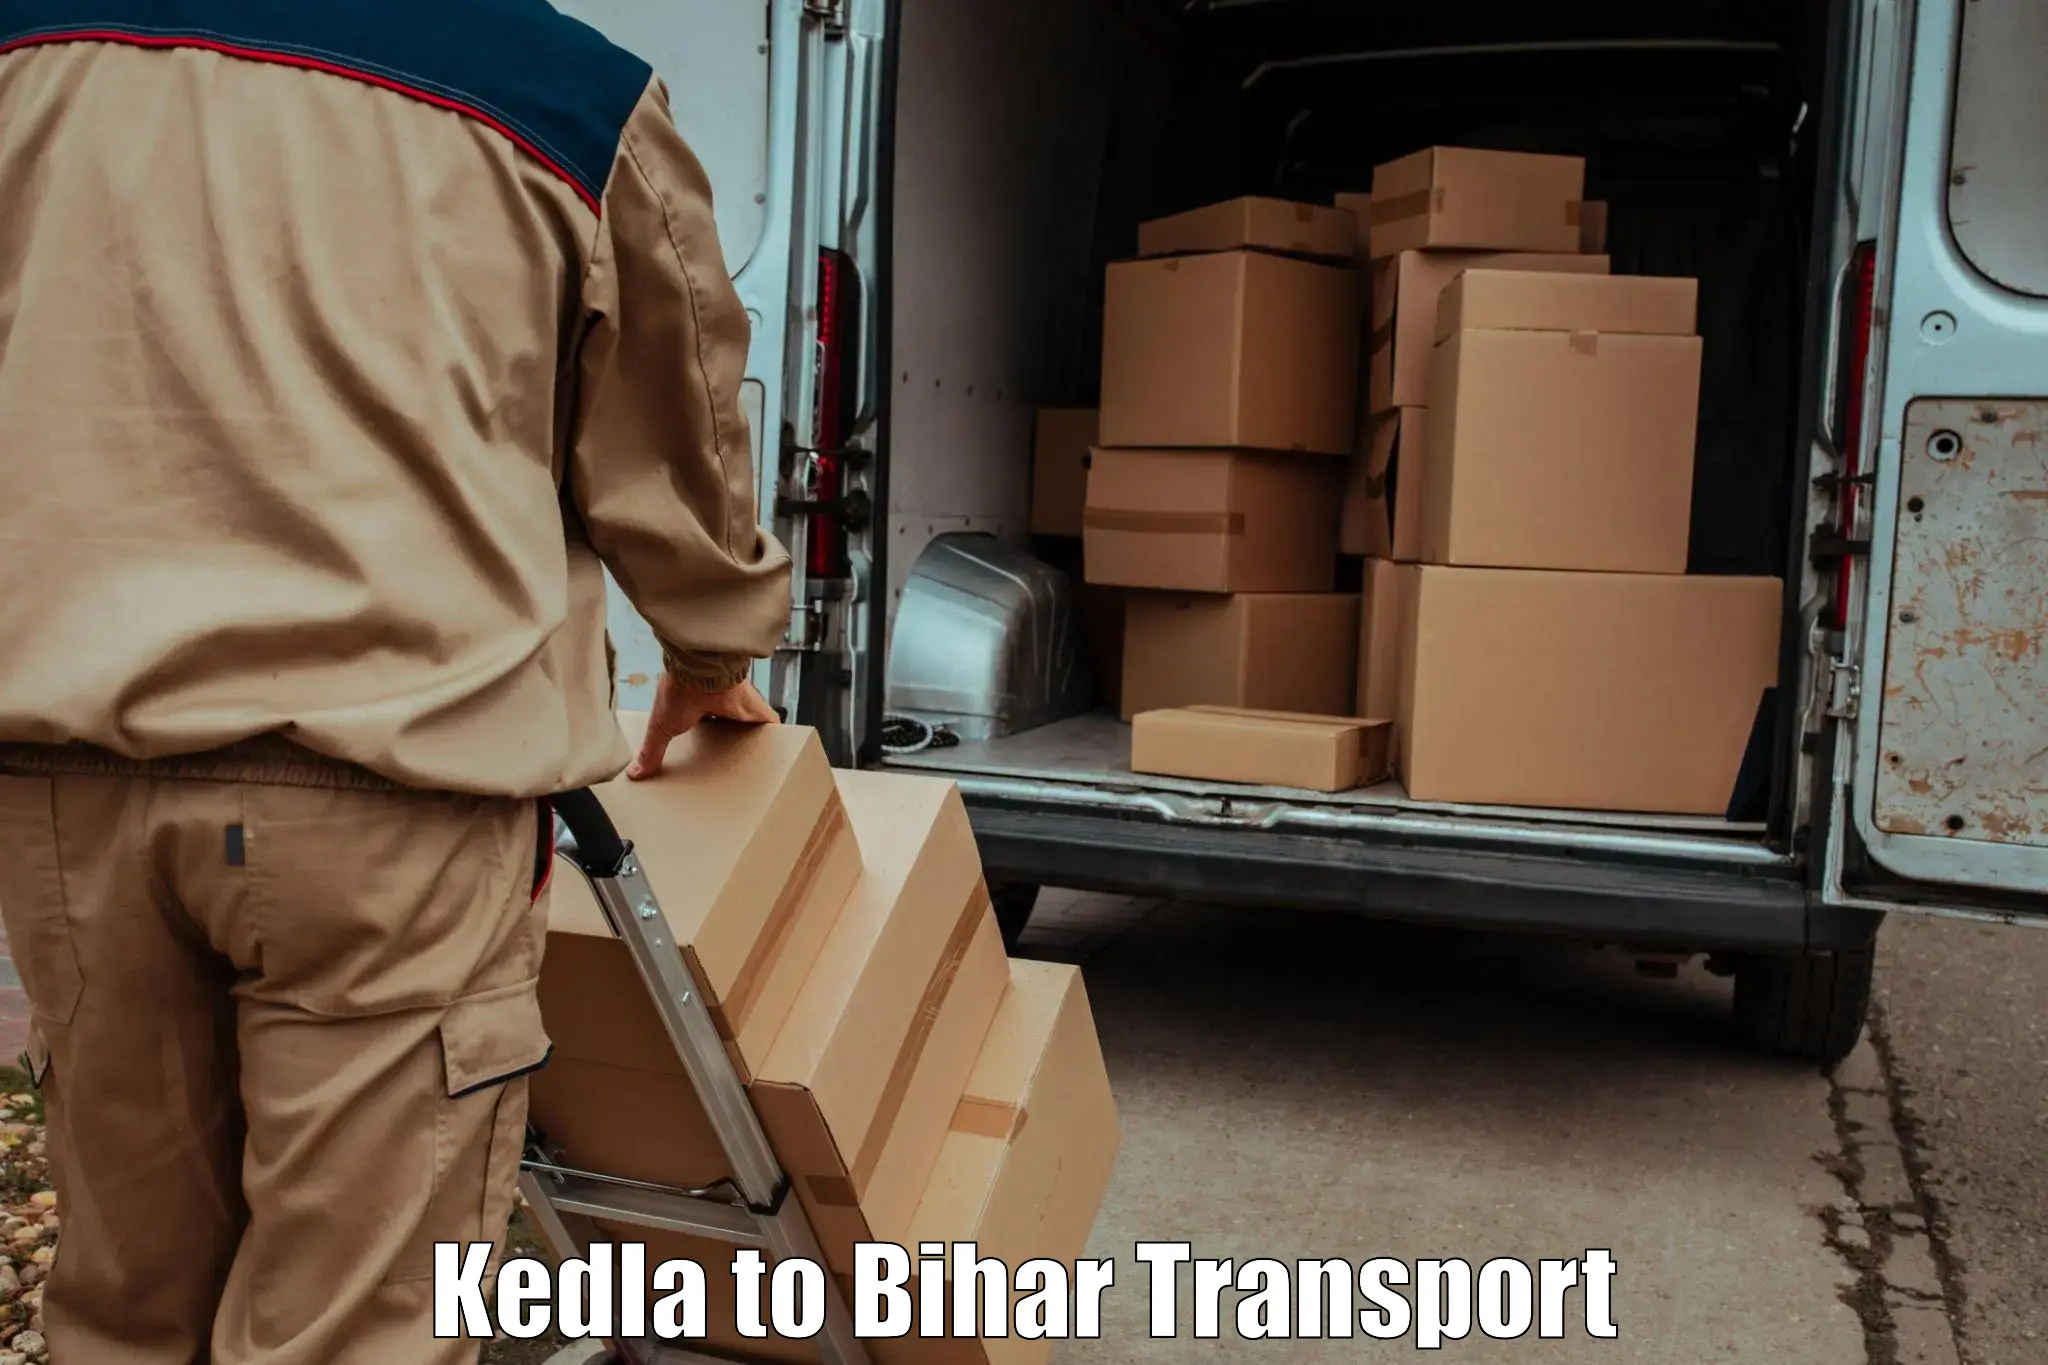 Parcel transport services Kedla to Korha